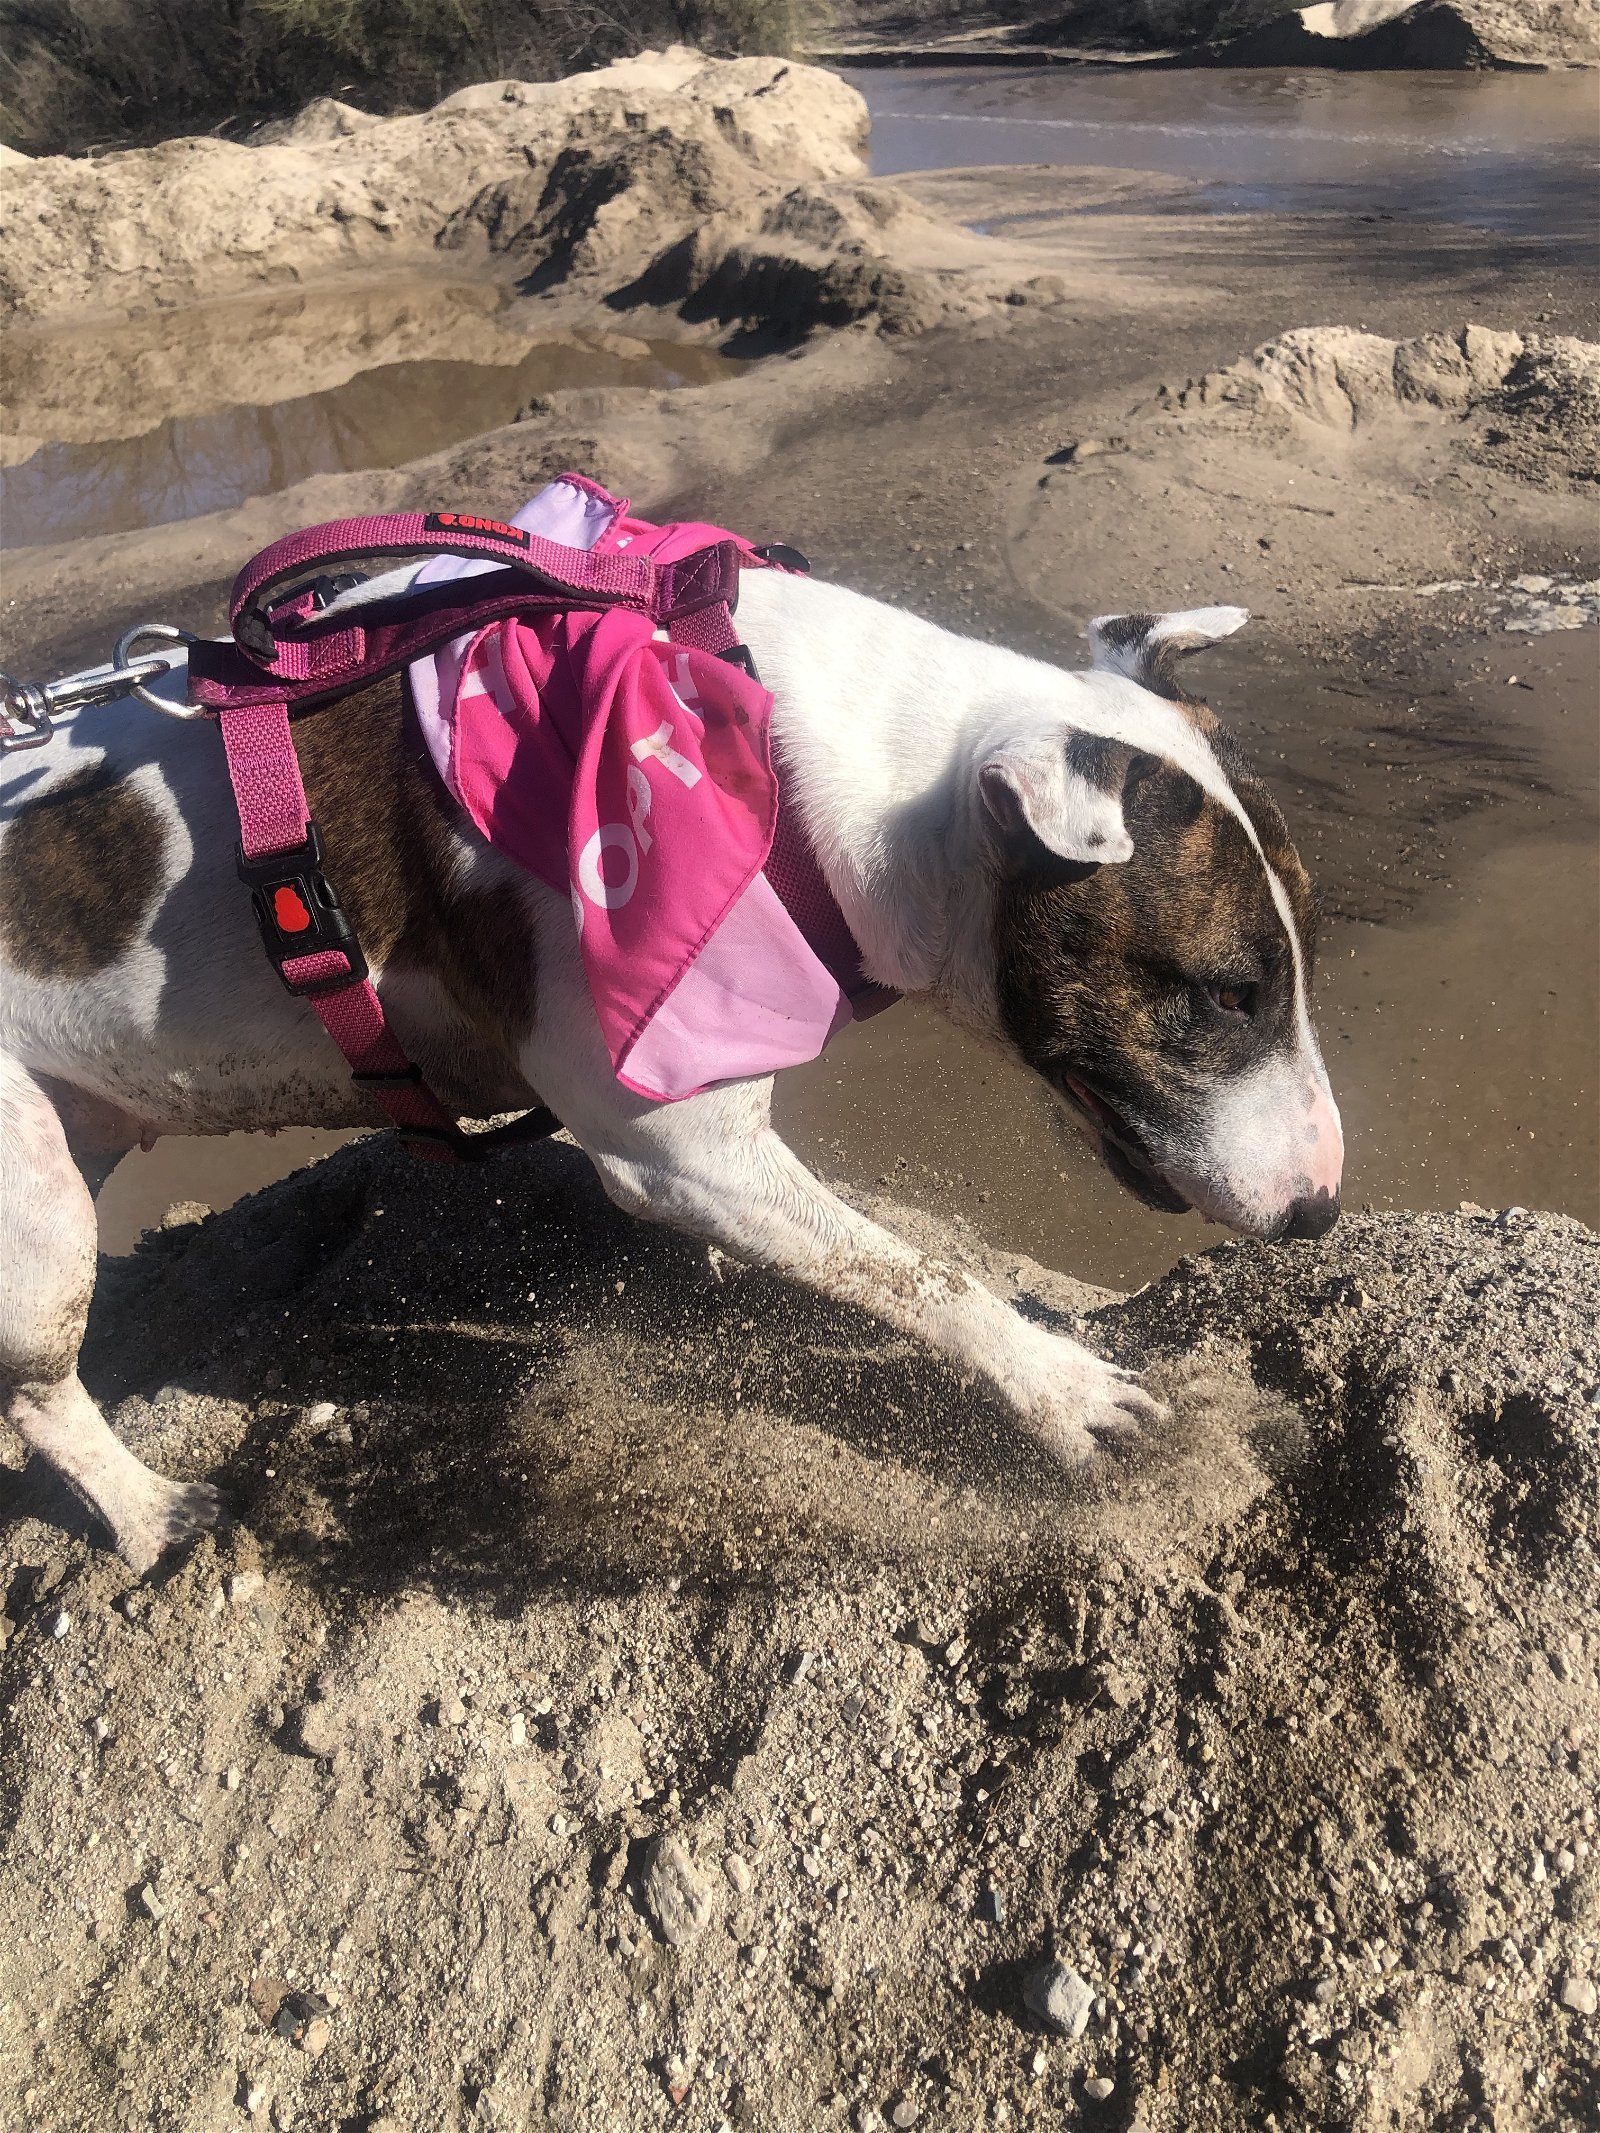 PENNY, an adoptable English Bulldog in Oro Valley, AZ, 85737 | Photo Image 3